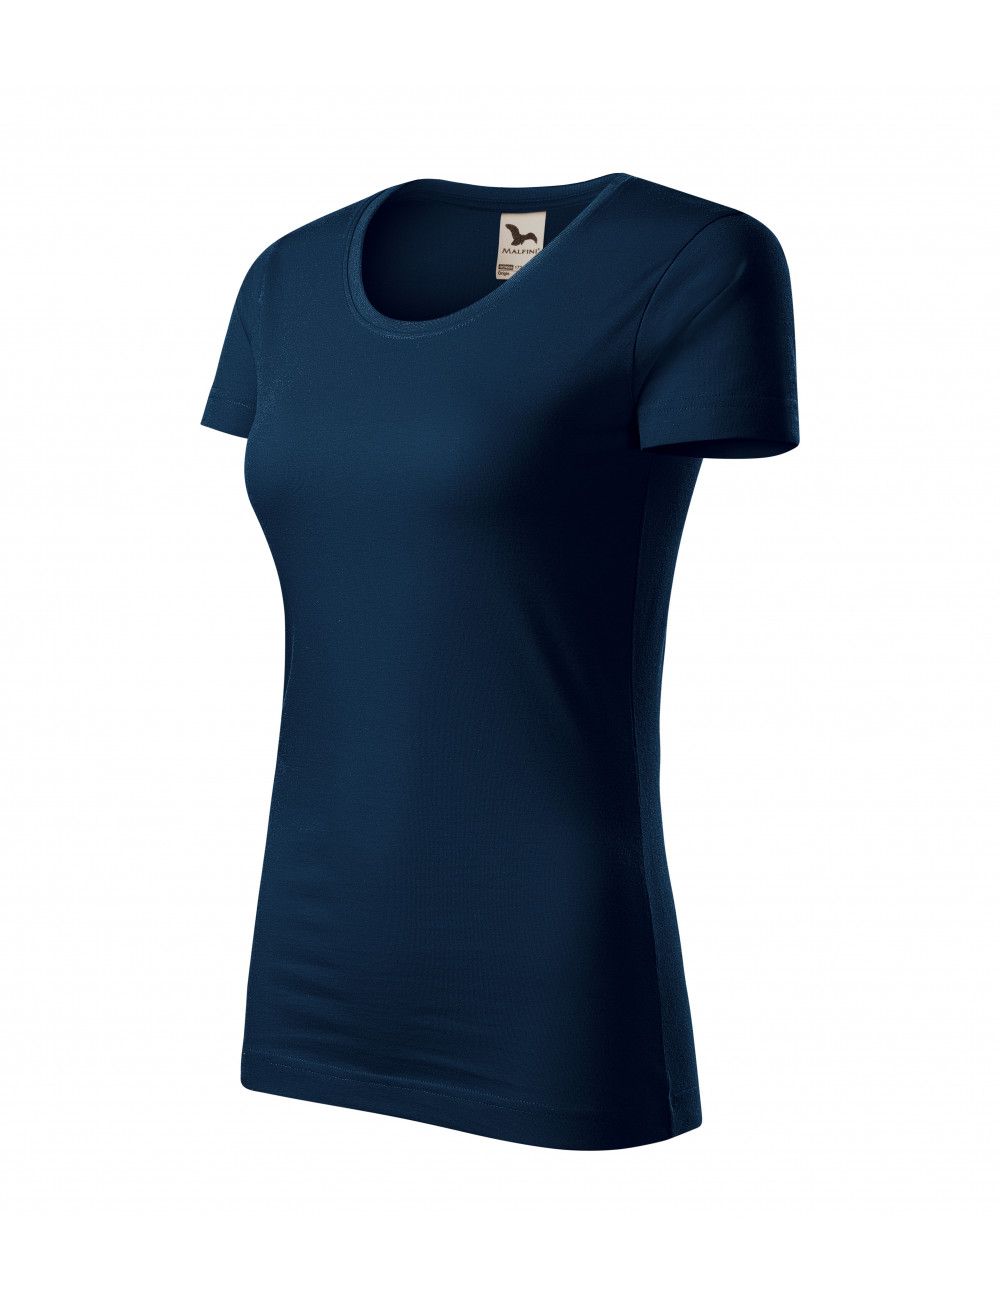 Women`s t-shirt origin 172 navy blue Adler Malfini